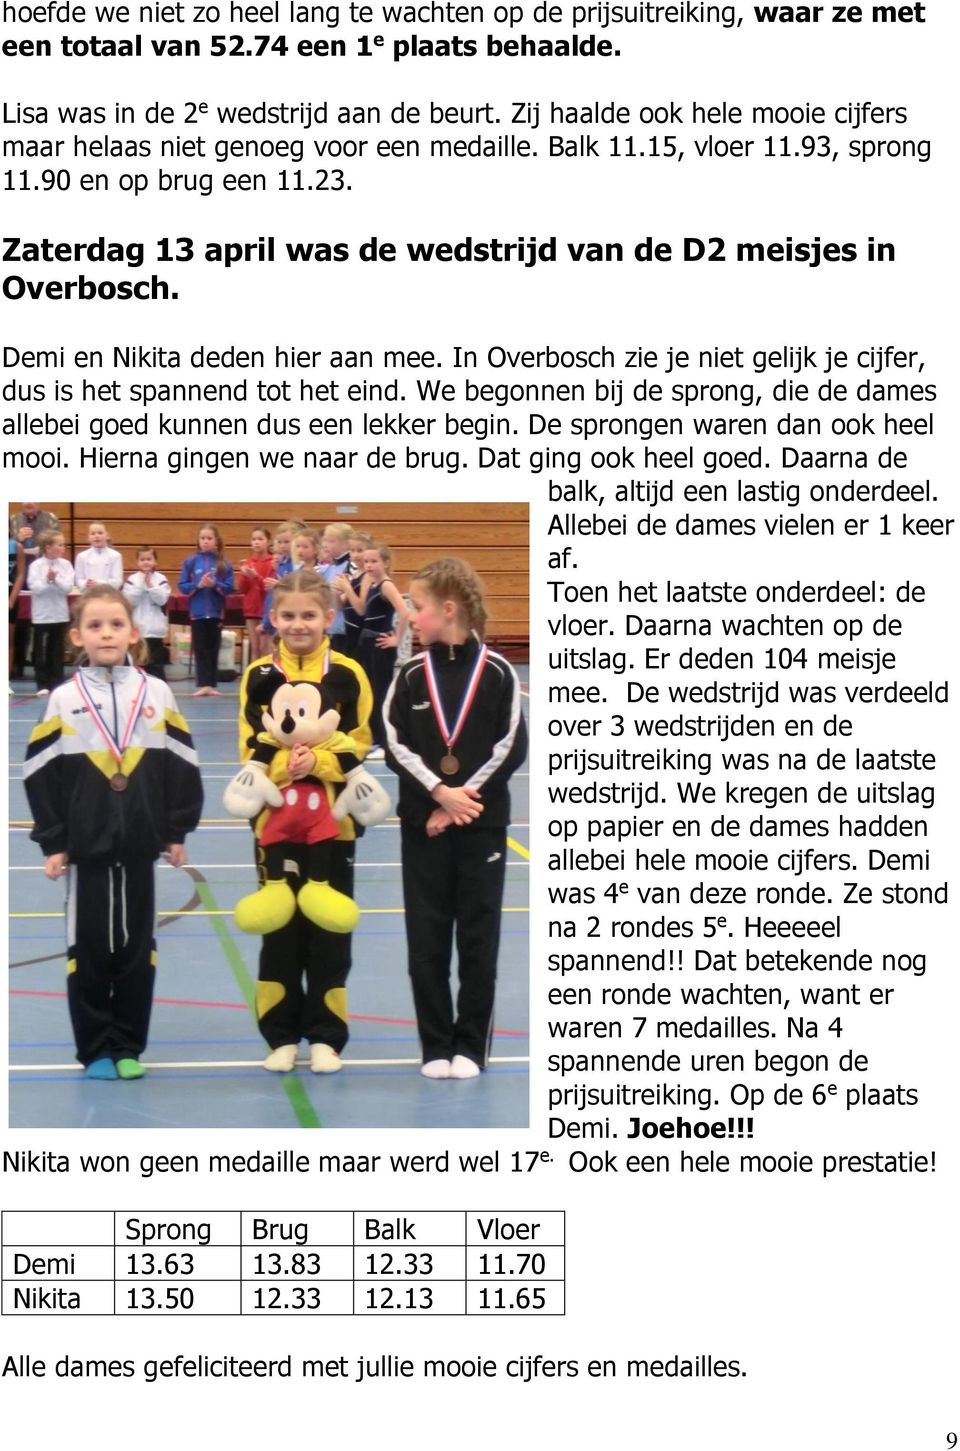 Zaterdag 13 april was de wedstrijd van de D2 meisjes in Overbosch. Demi en Nikita deden hier aan mee. In Overbosch zie je niet gelijk je cijfer, dus is het spannend tot het eind.